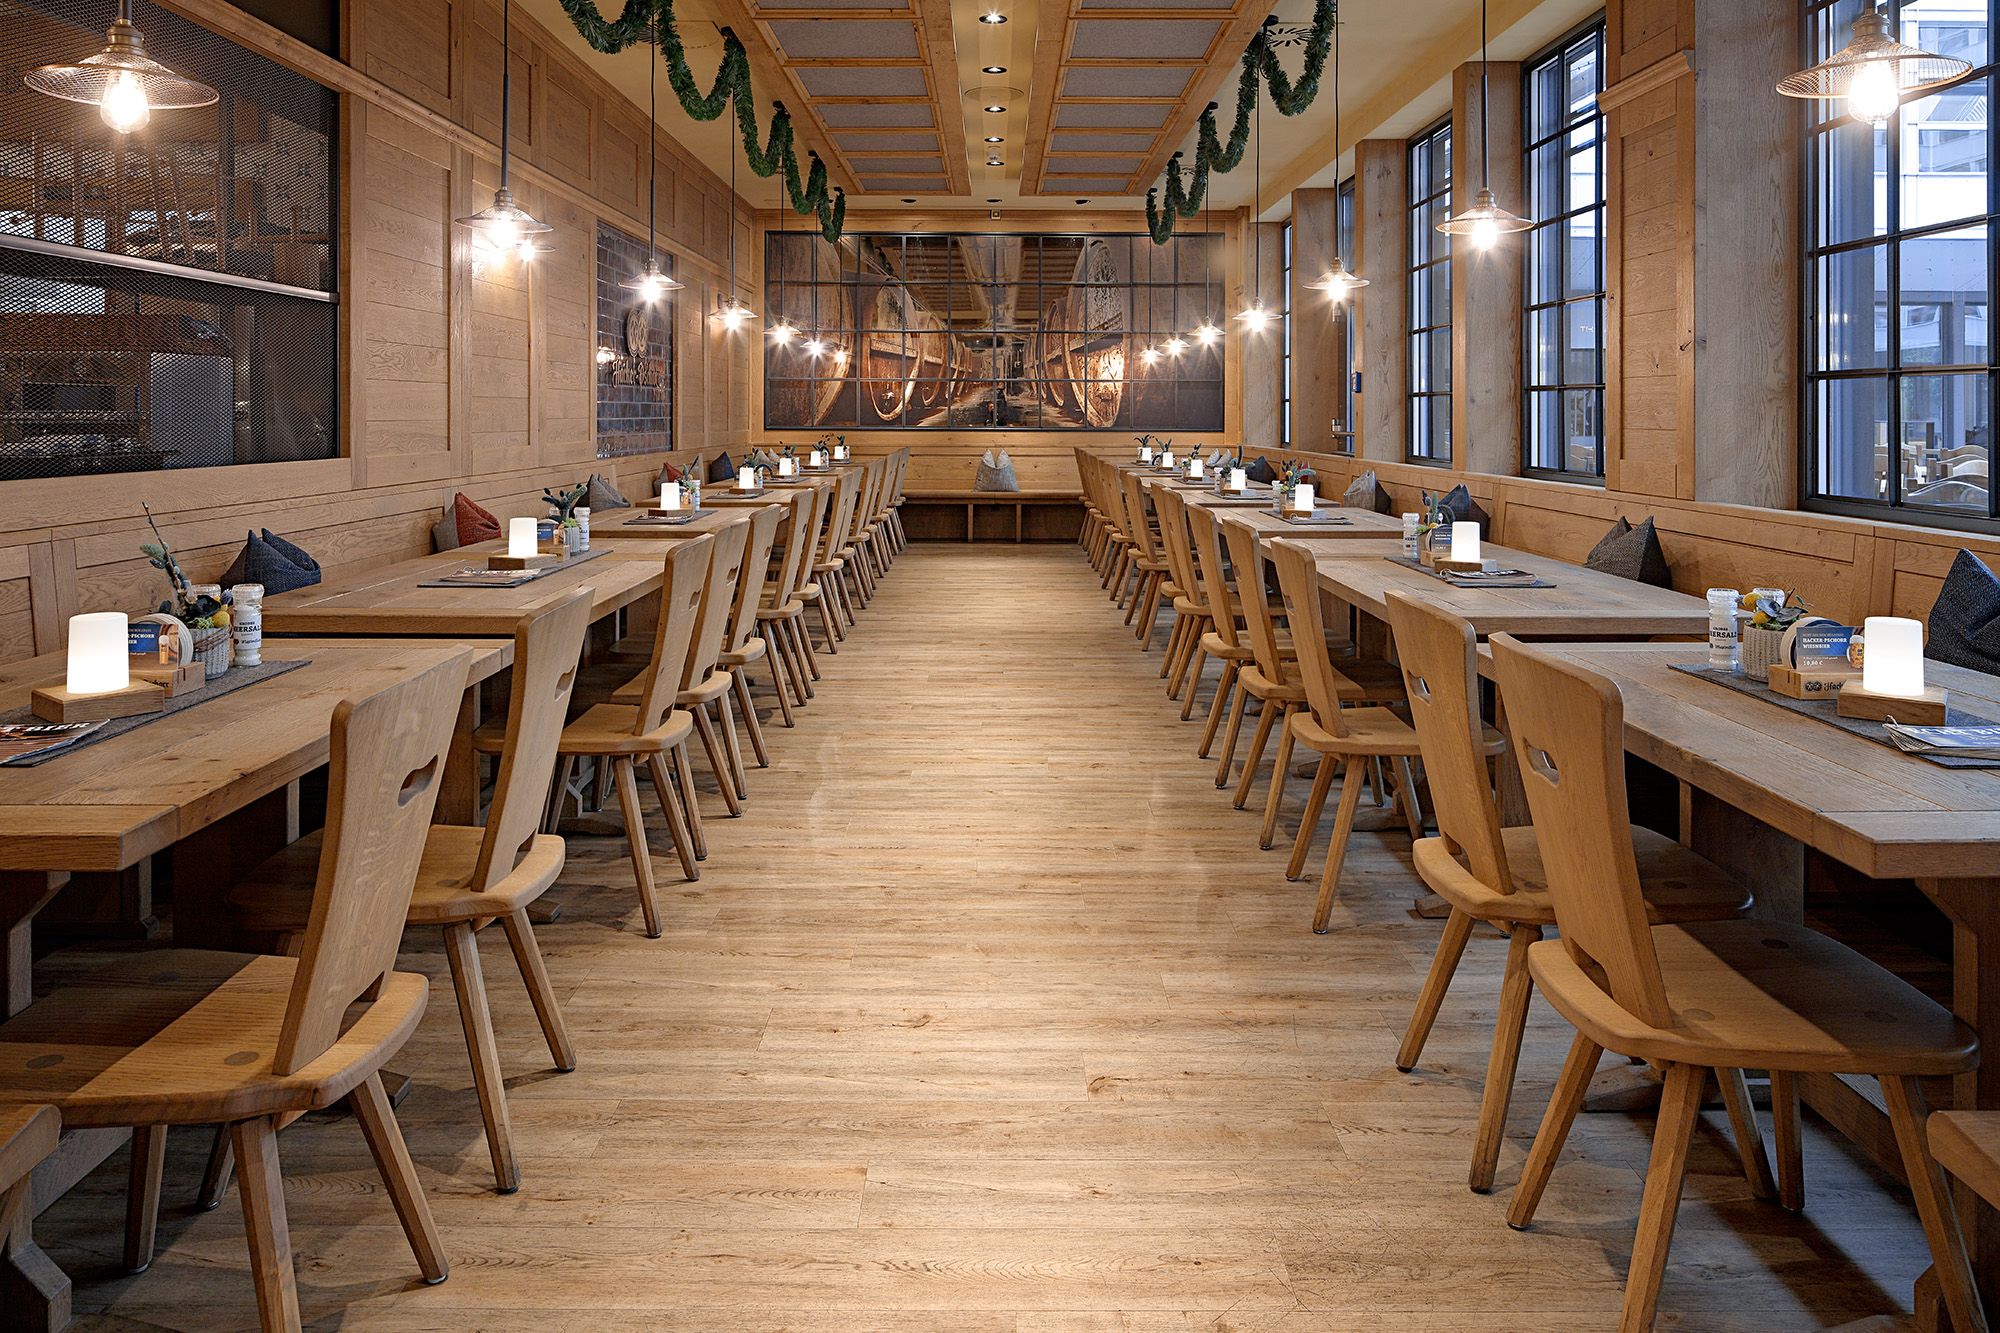 Designboden von PROJECT FLOORS  im Restaurant in Holzoptik hell - 